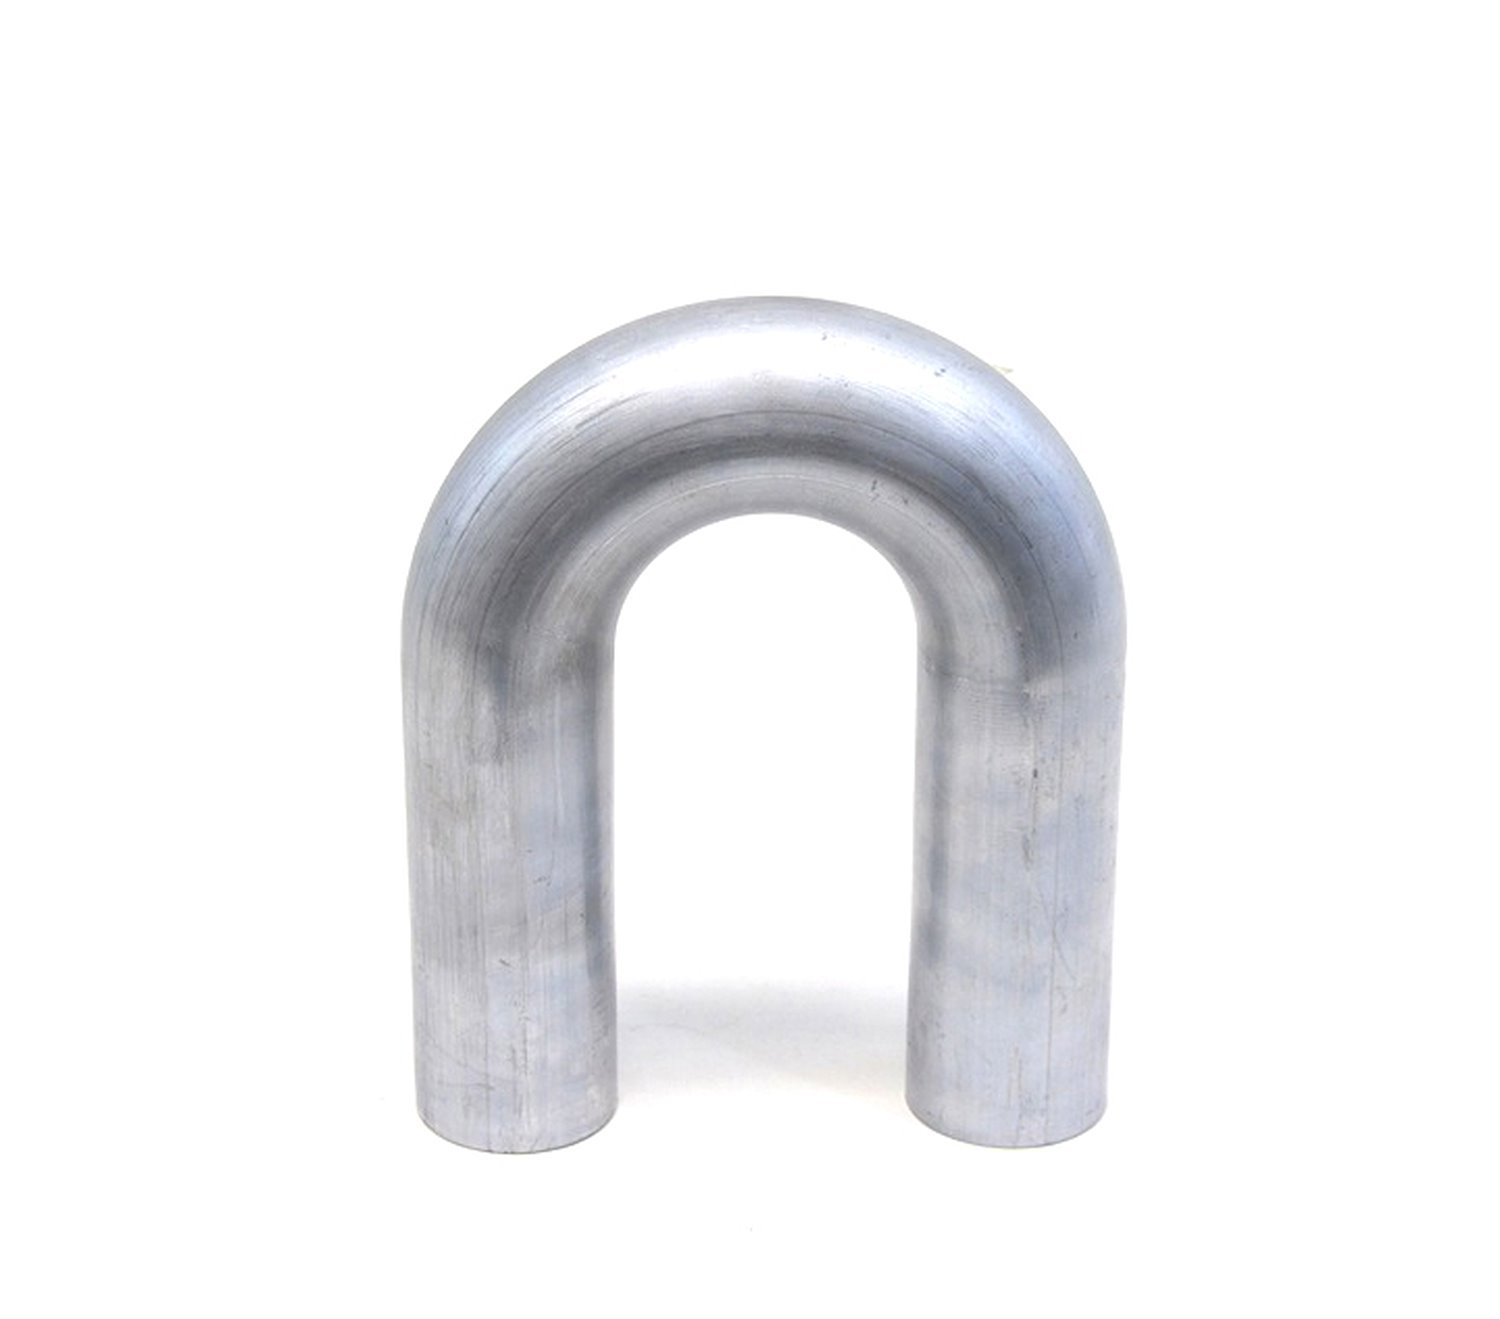 AT180-150-CLR-25 Aluminum Elbow Tube, 6061 Aluminum, 180-Degree U Bend Elbow Tubing, 1-1/2 in. OD, Tight Radius, 2-1/2 in. CLR